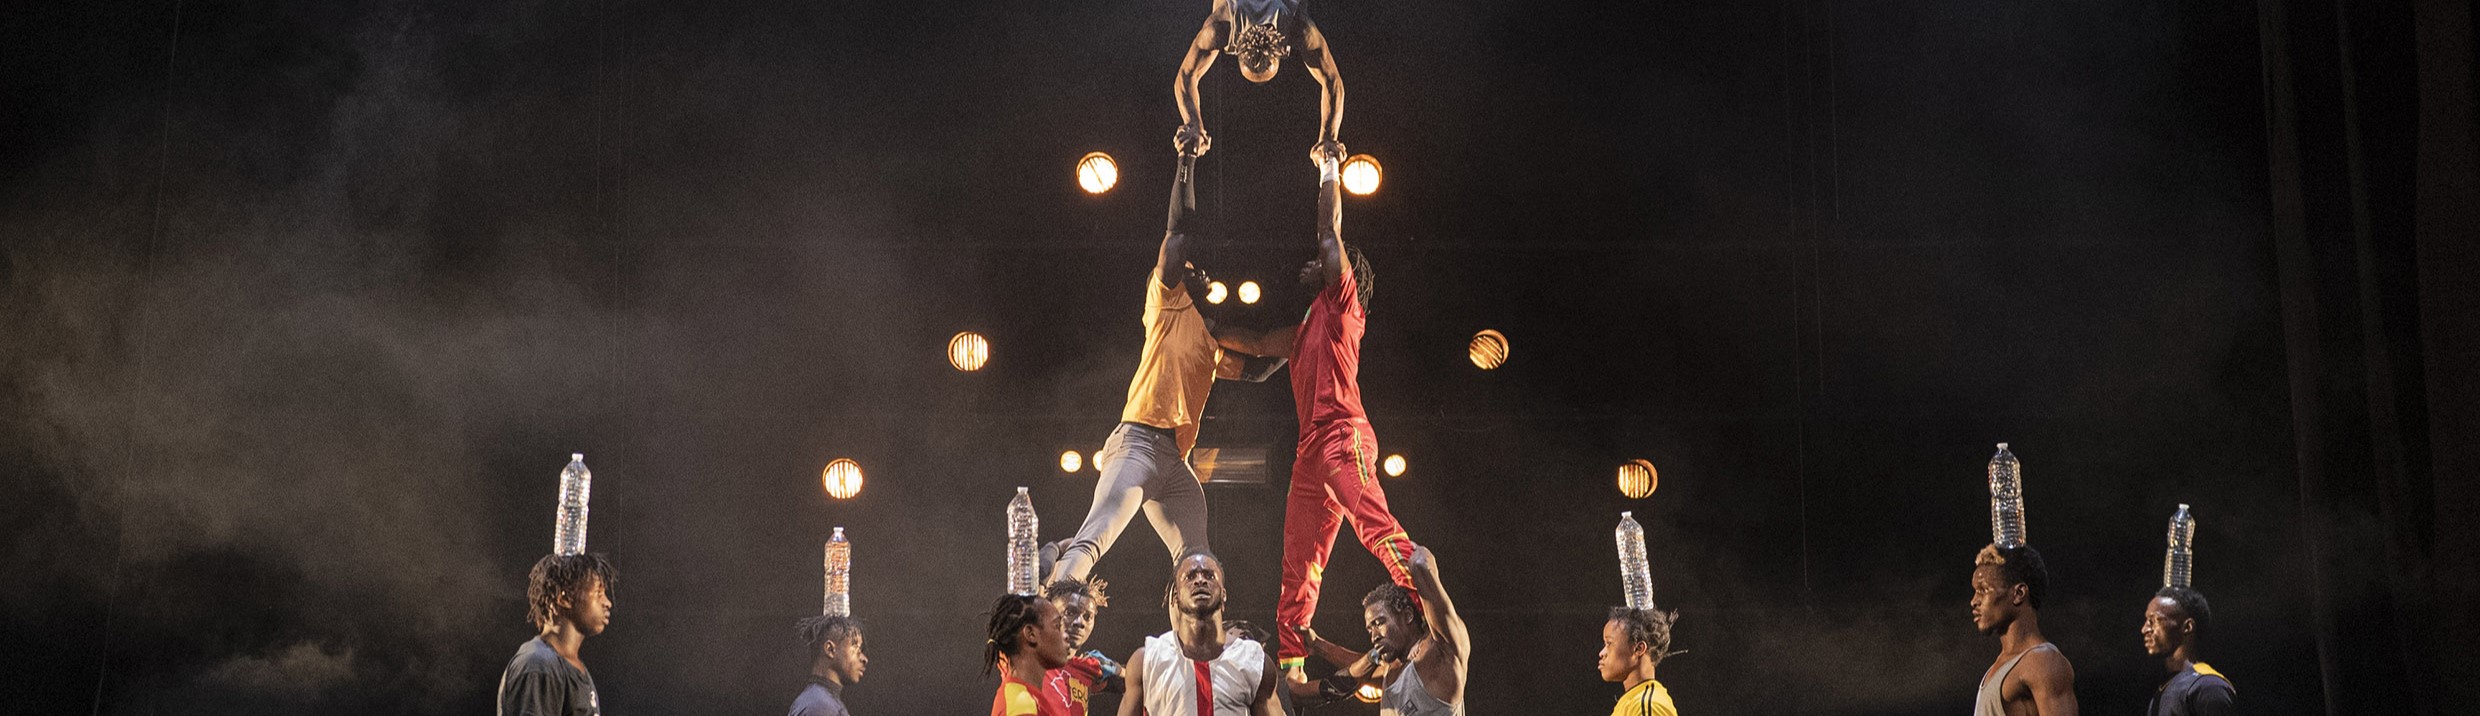 Grupp av människor utöver grupp akrobatik samtidigt som det står personer runt och balanserar vattenflaskor på huvudet.